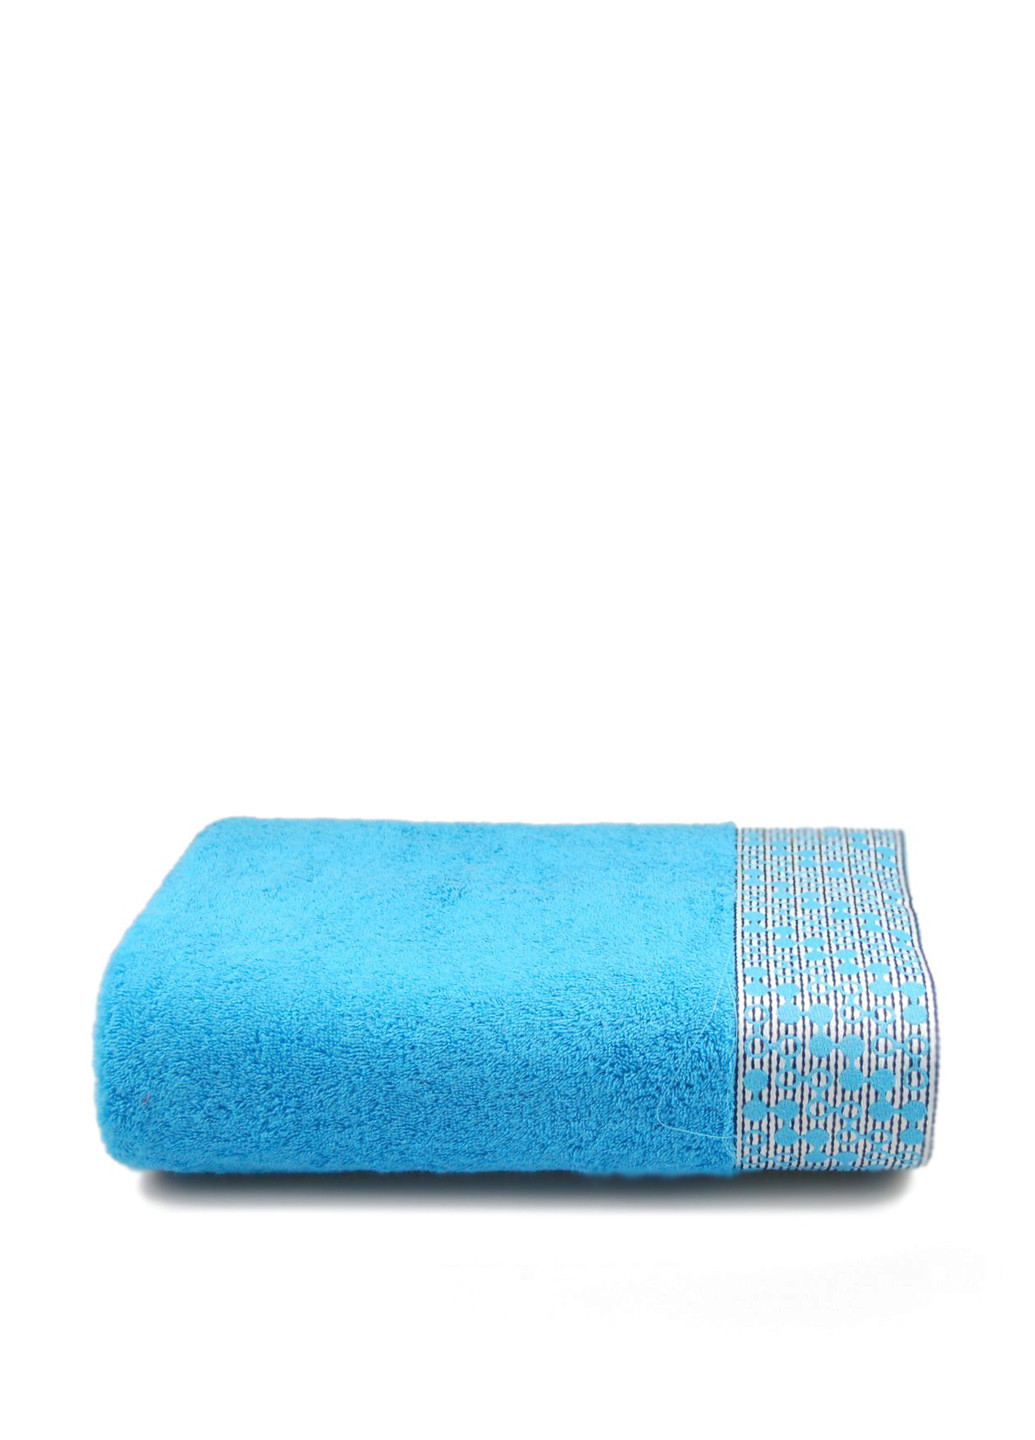 Home Line полотенце, 70х140 см орнамент голубой производство - Турция